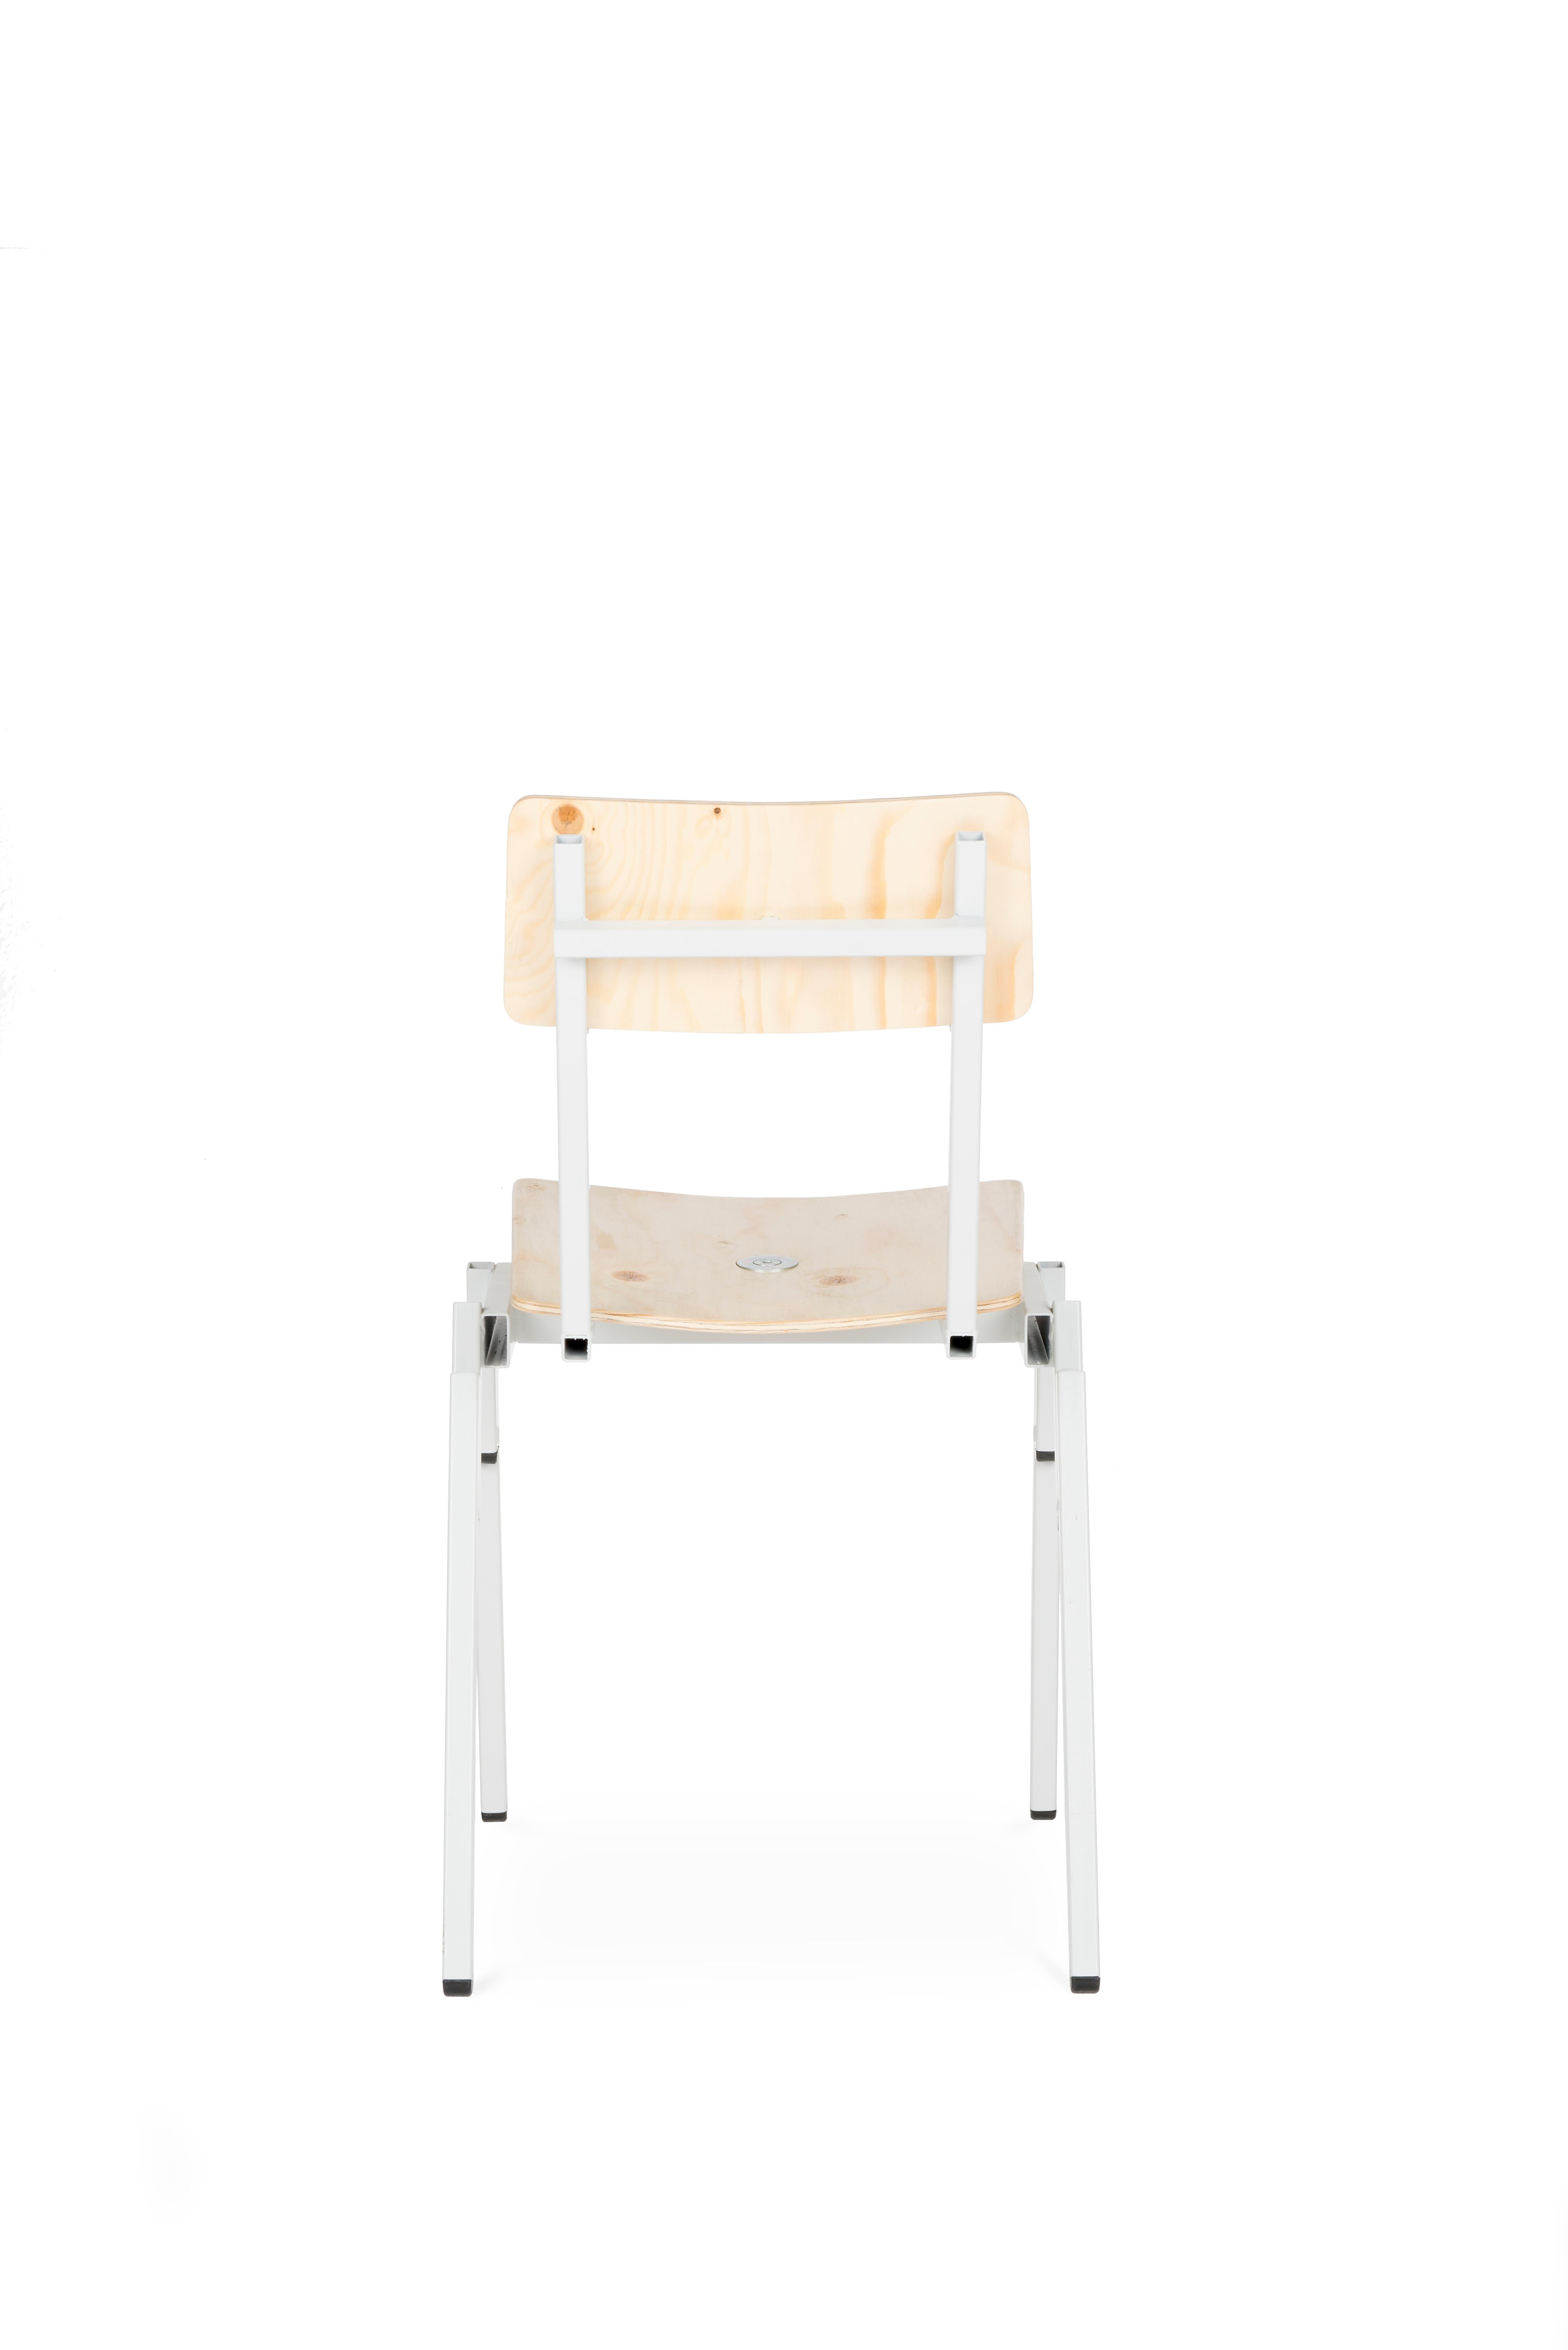 Dutch Lensvelt PHM2411 Chair For Sale